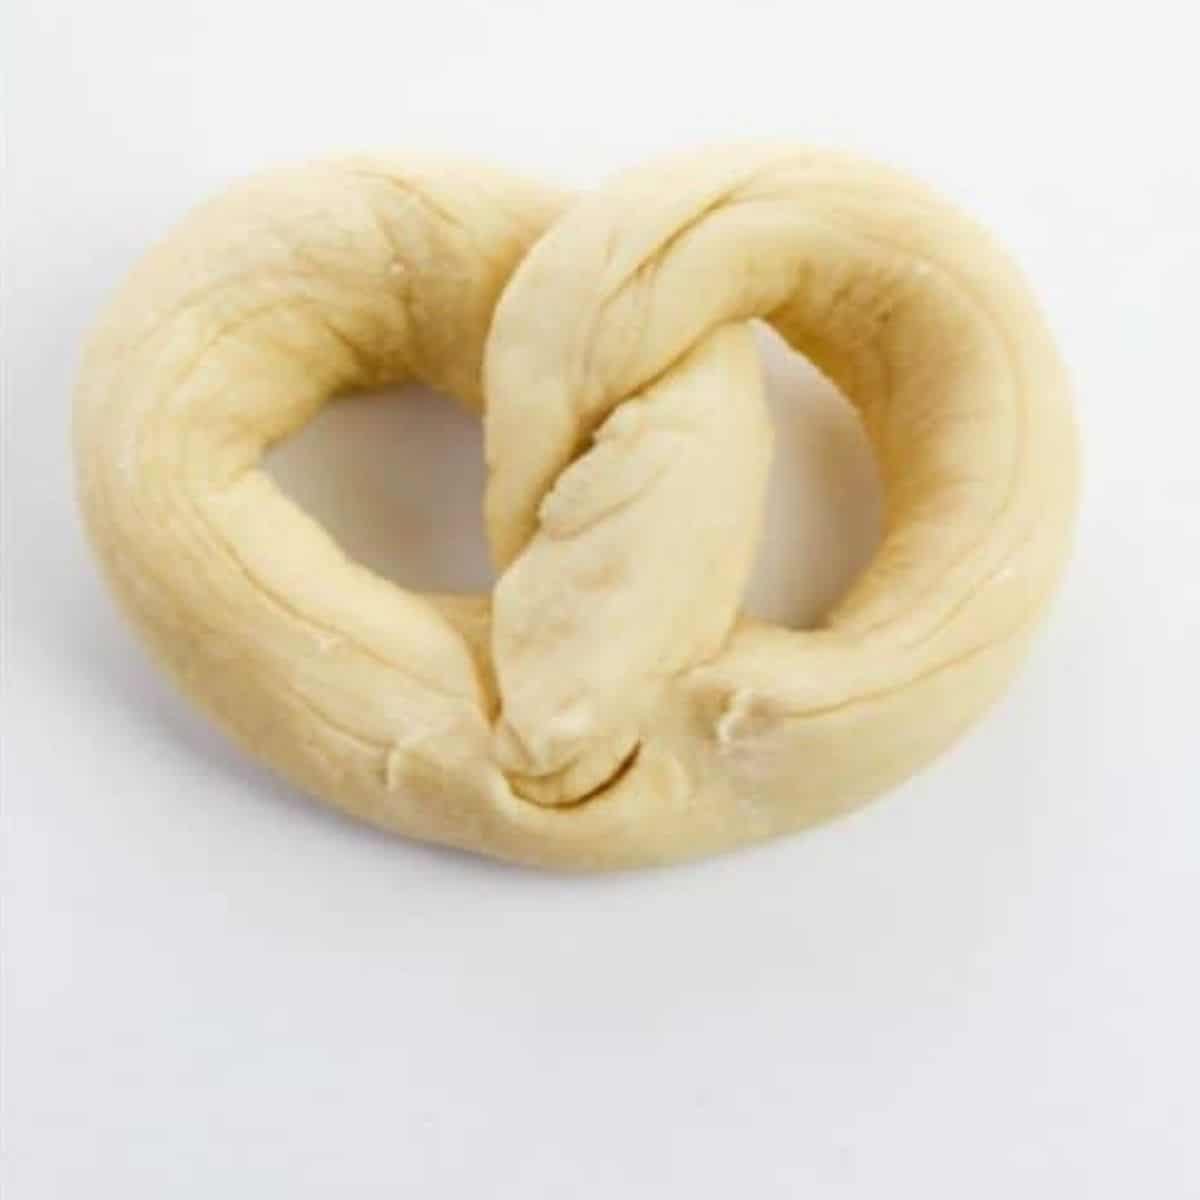 Dough shaped into a pretzel.